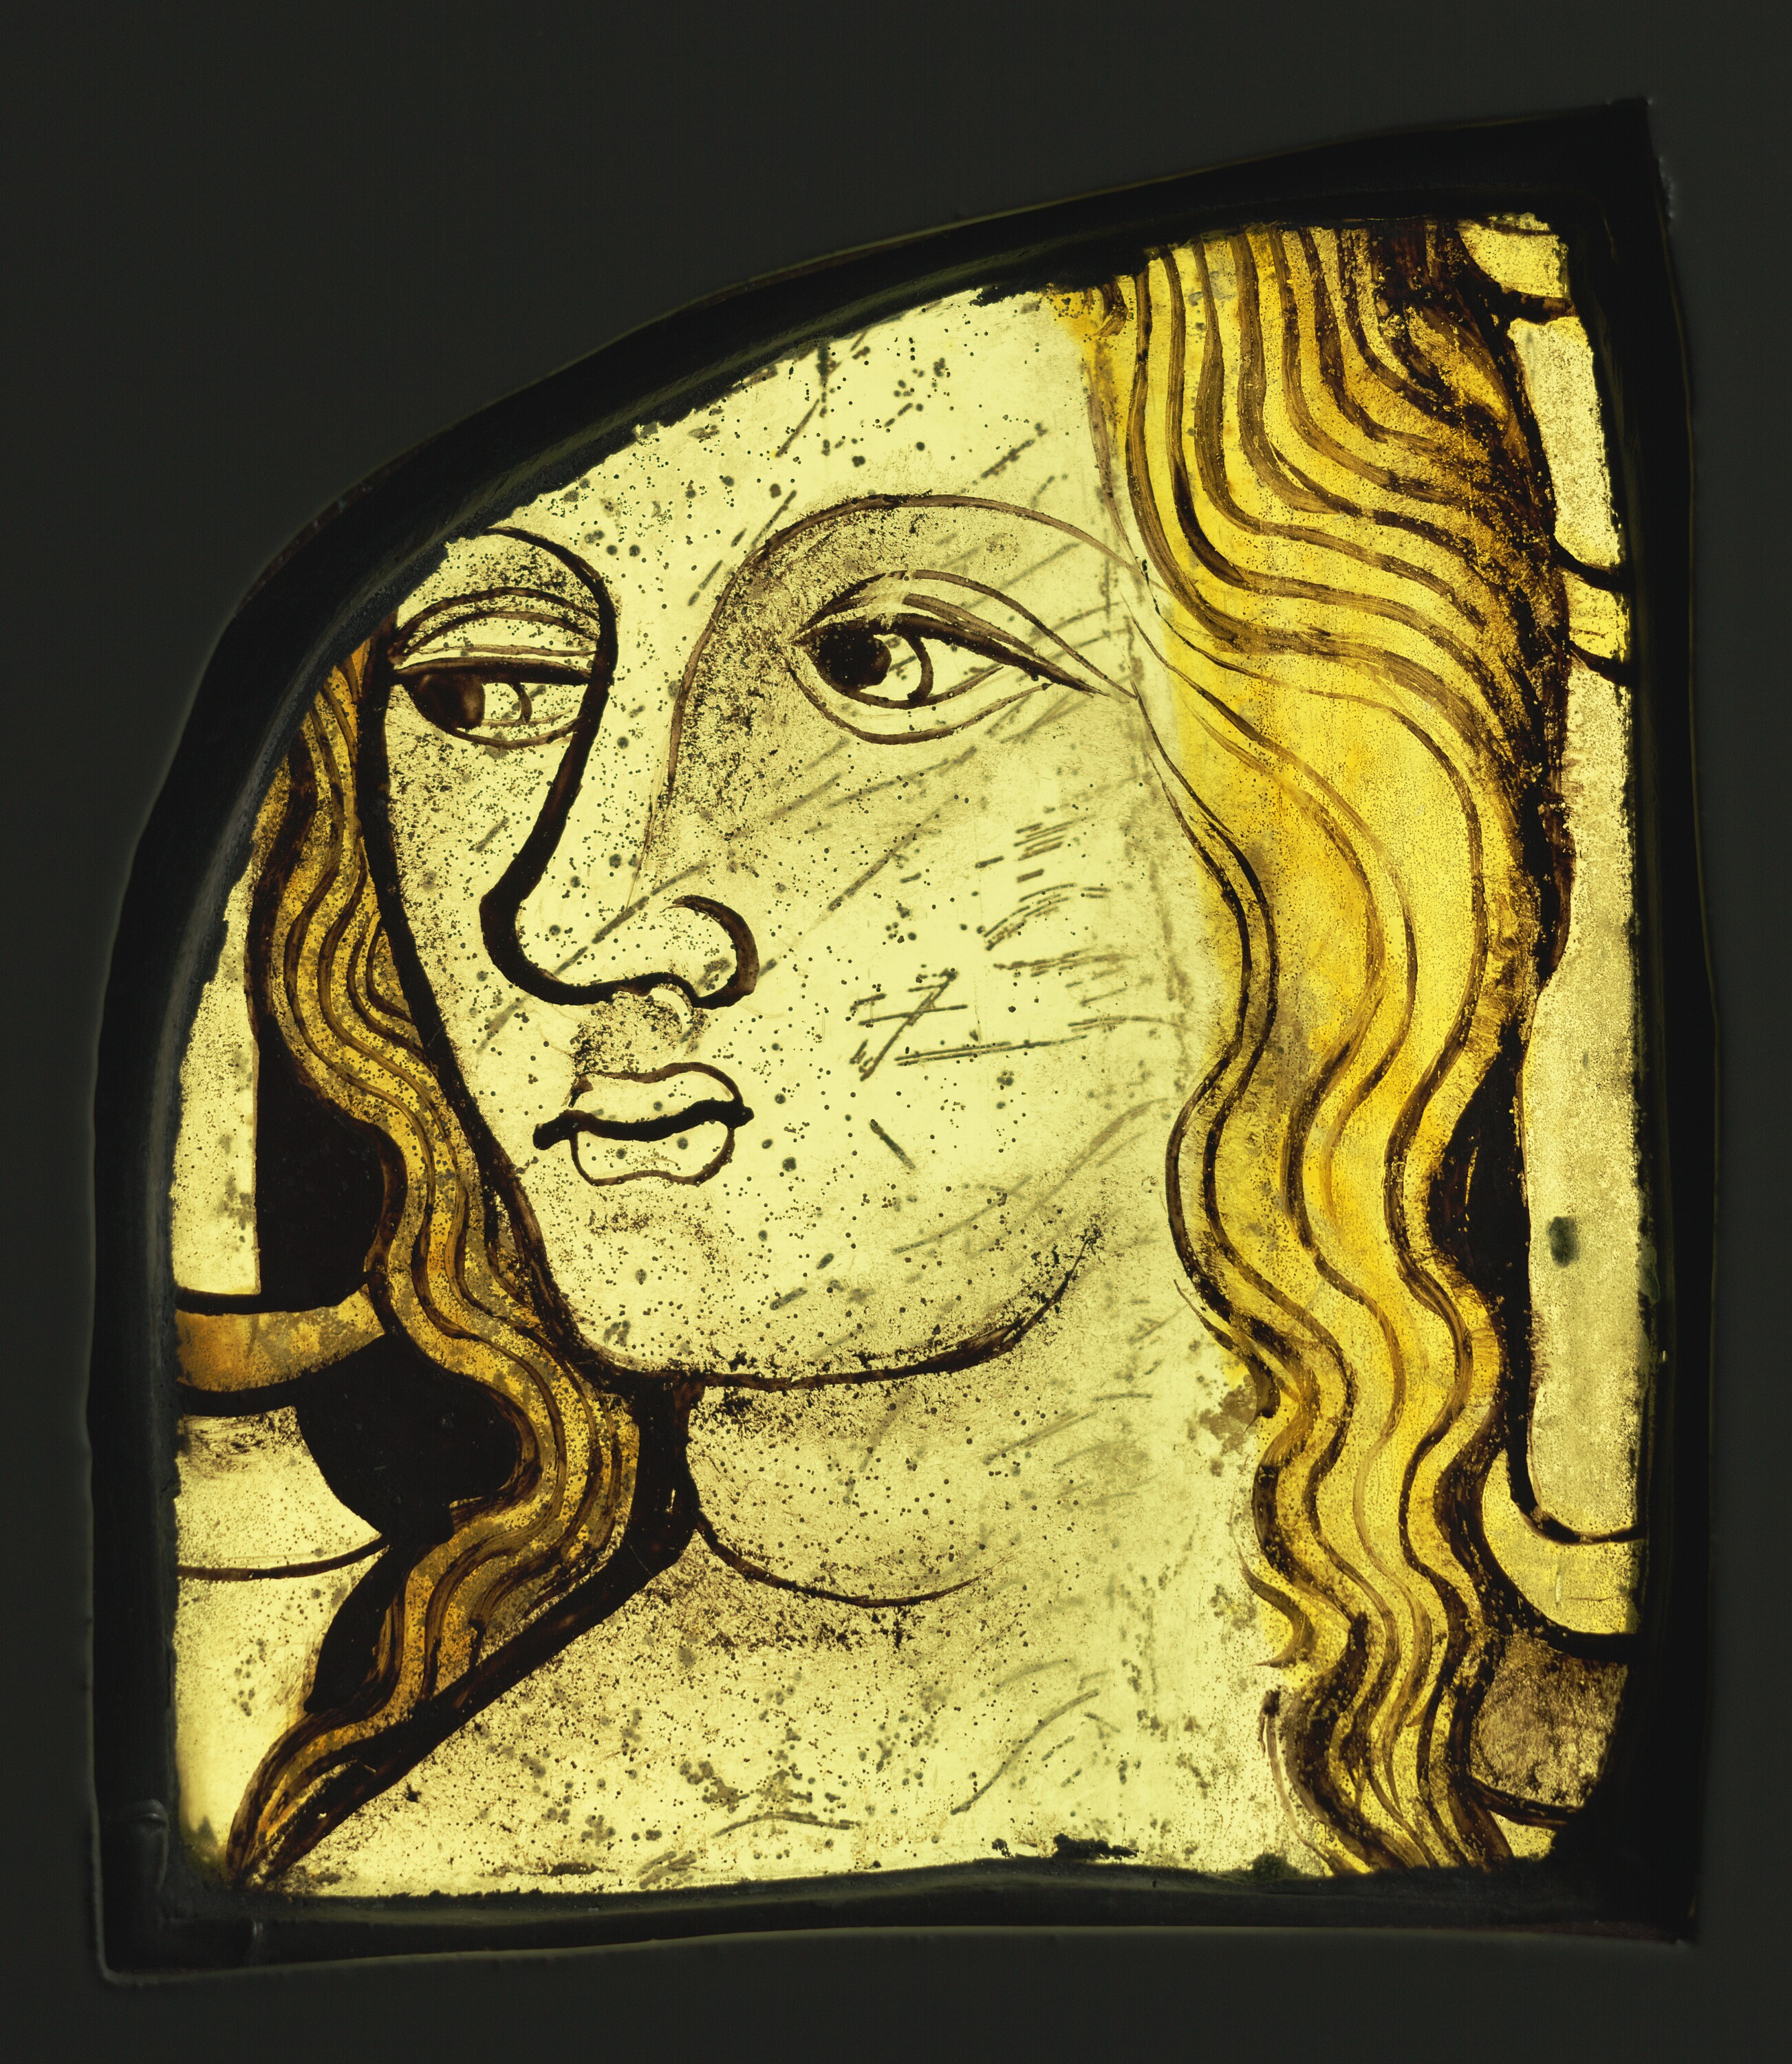 Kadın Başı (orig. "Female Head") by Bilinmeyen Sanatçı - 1420–1430 civarı - 15,4 × 11,9 × 1 cm 